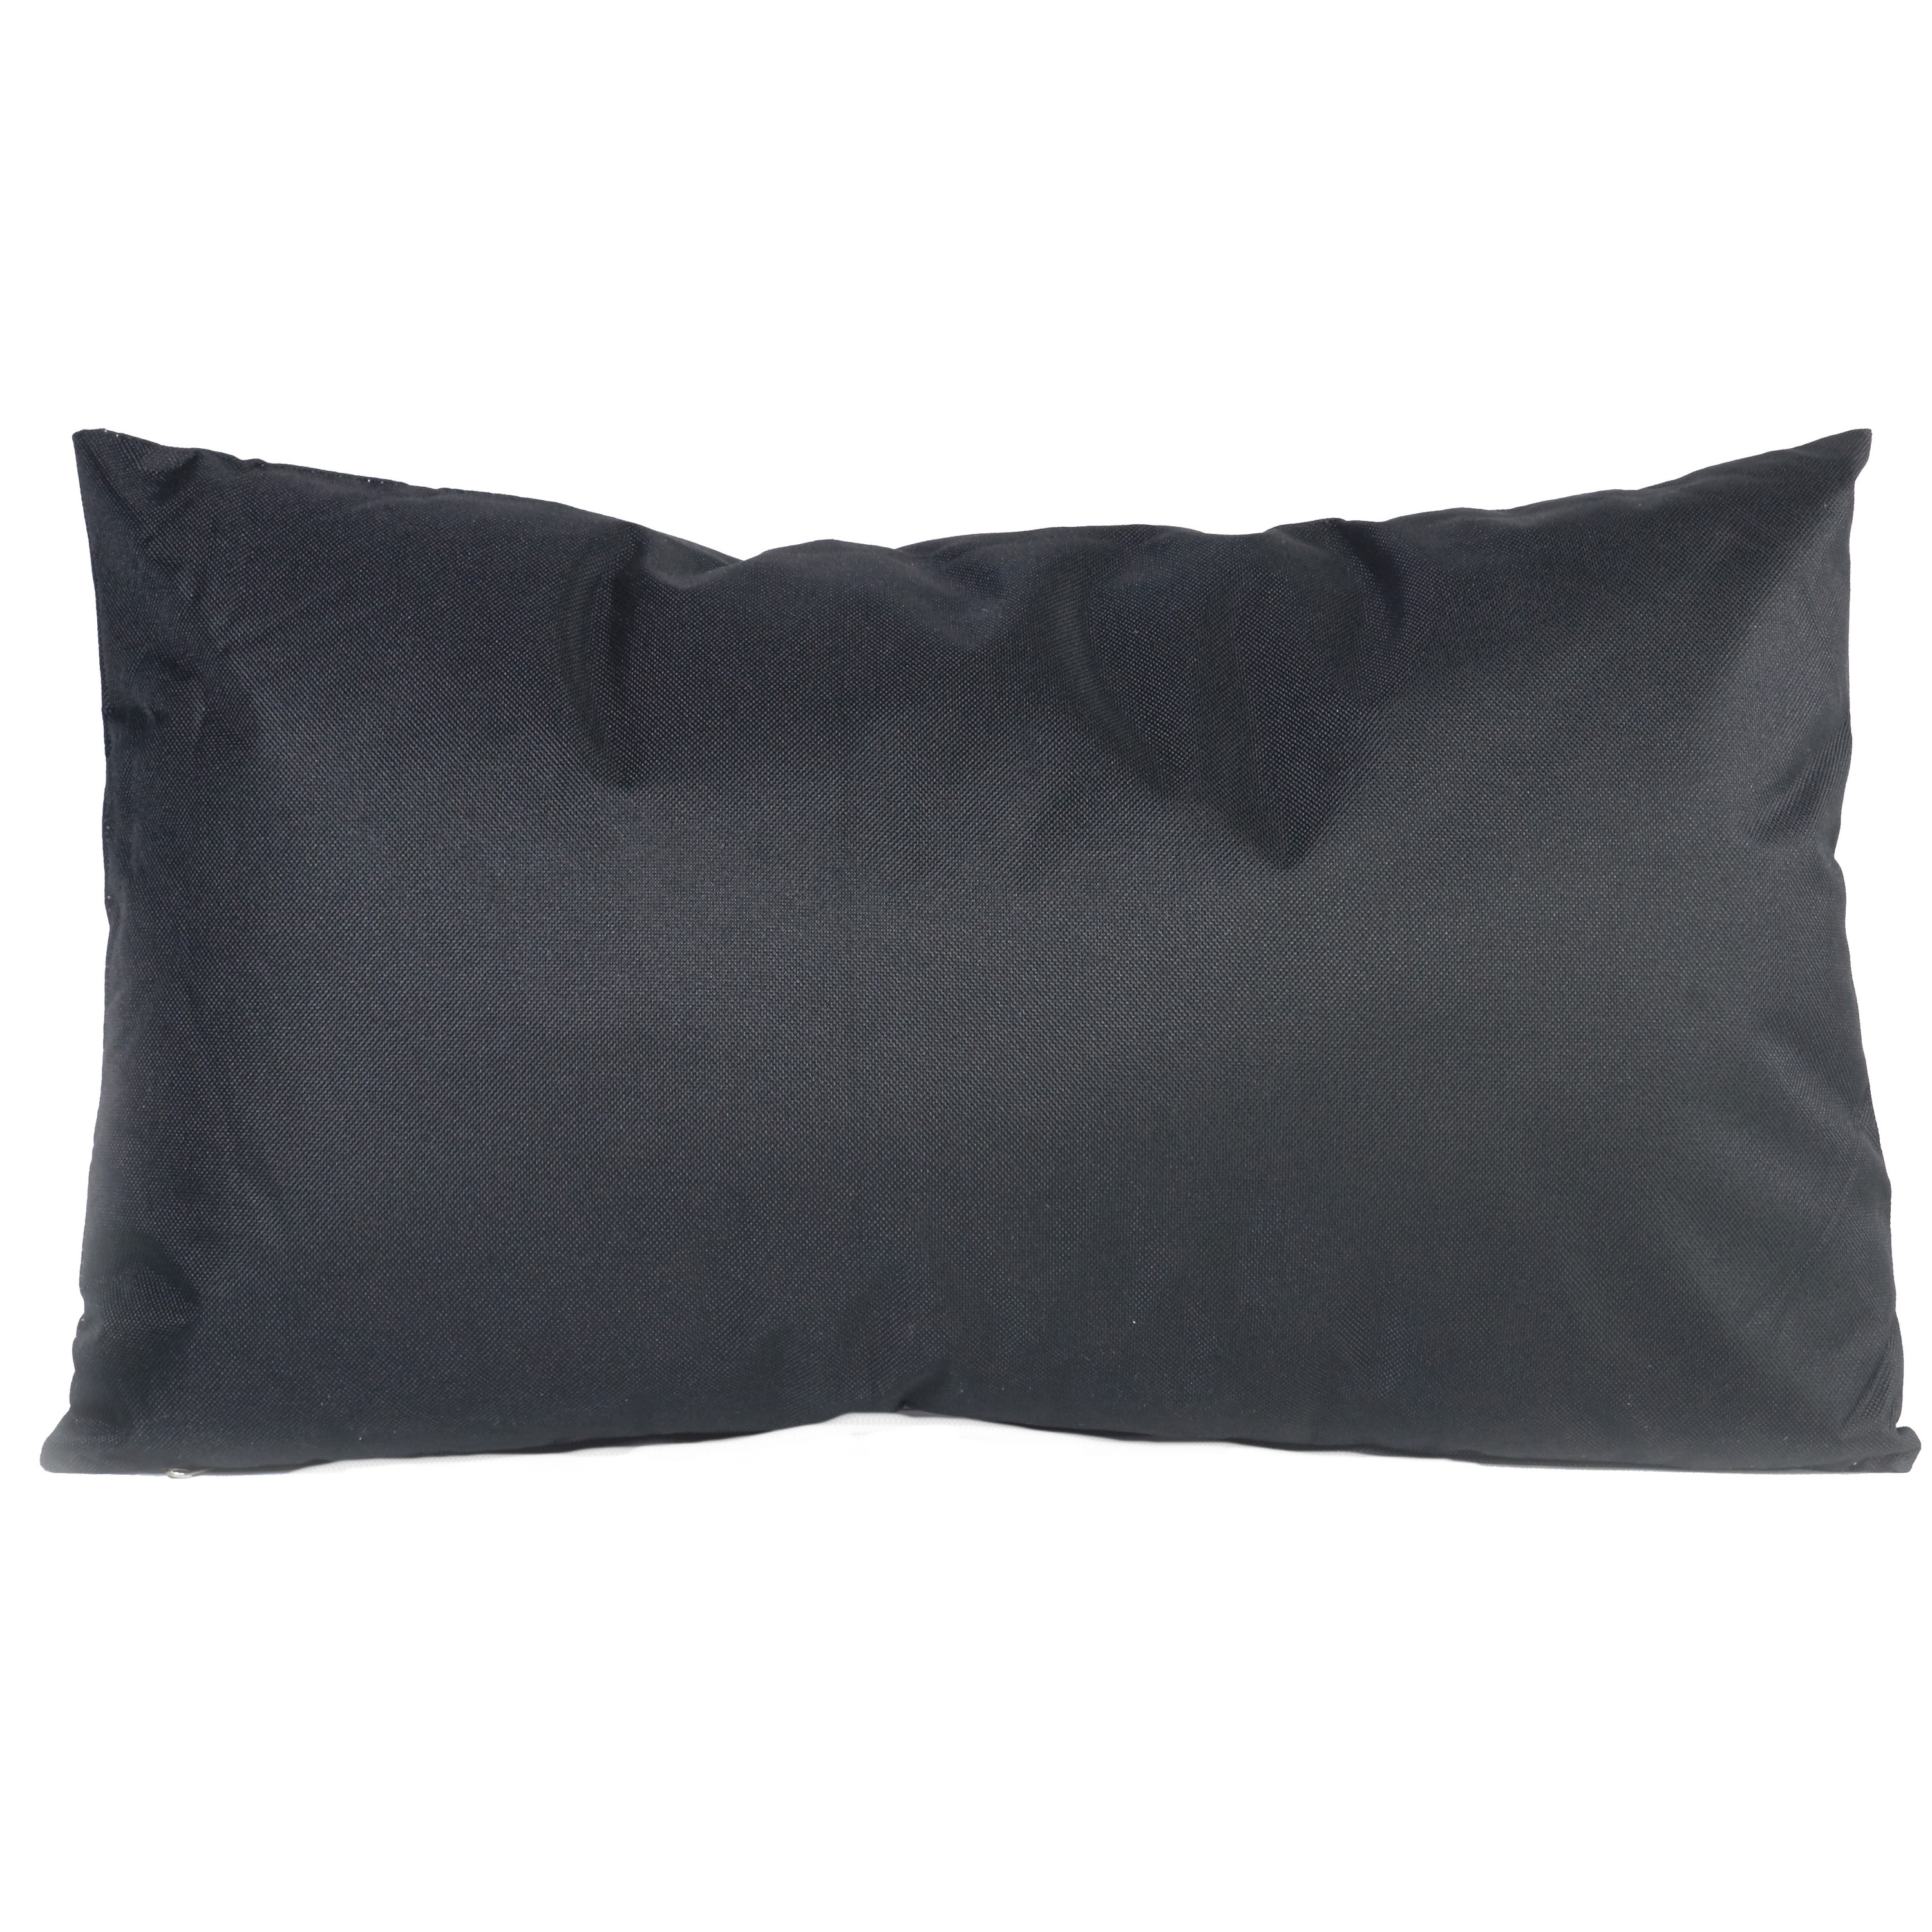 Bank-sier kussens voor binnen en buiten in de kleur zwart 30 x 50 cm